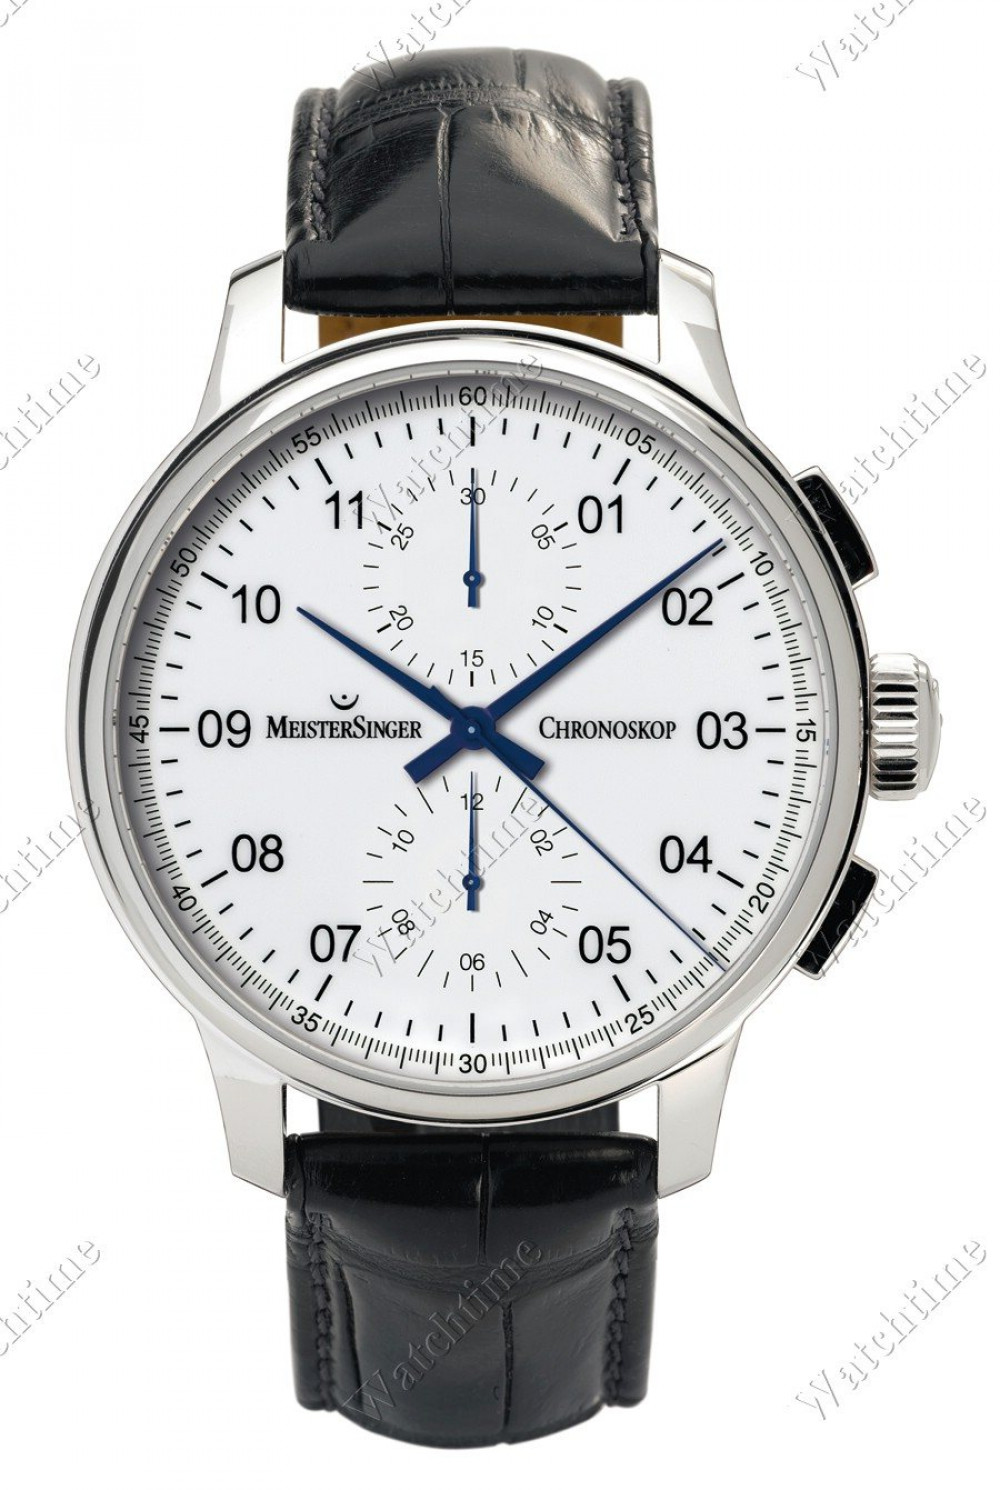 Zegarek firmy MeisterSinger, model Chronoskop